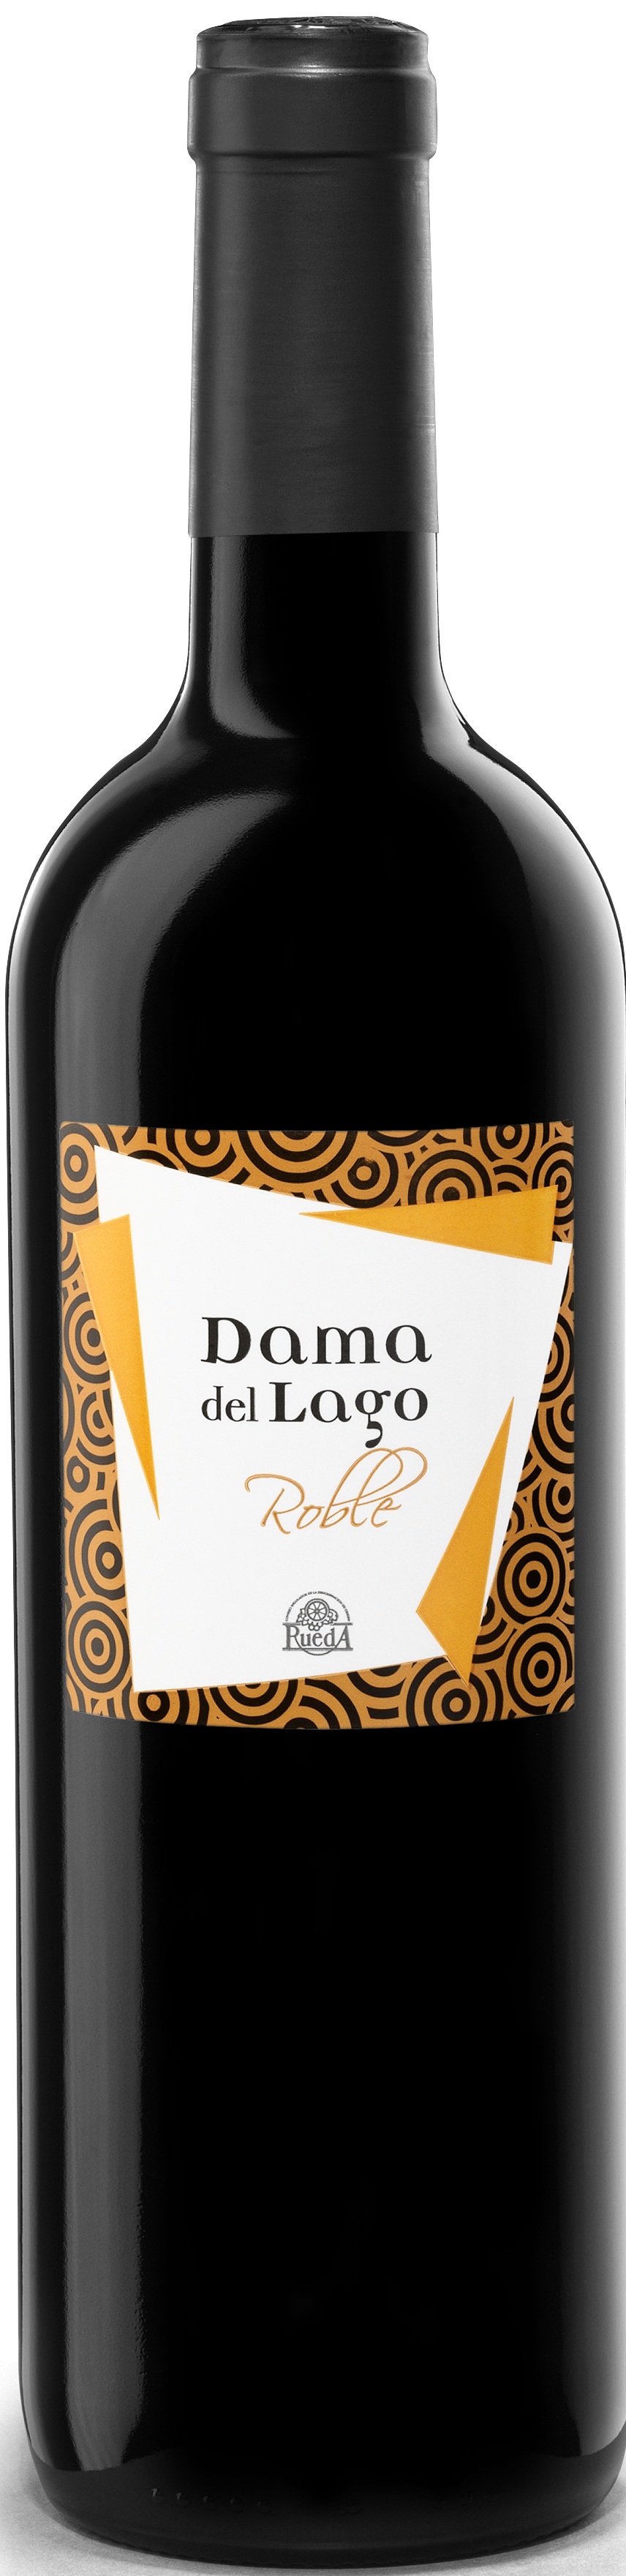 Logo Wein Dama del Lago Roble